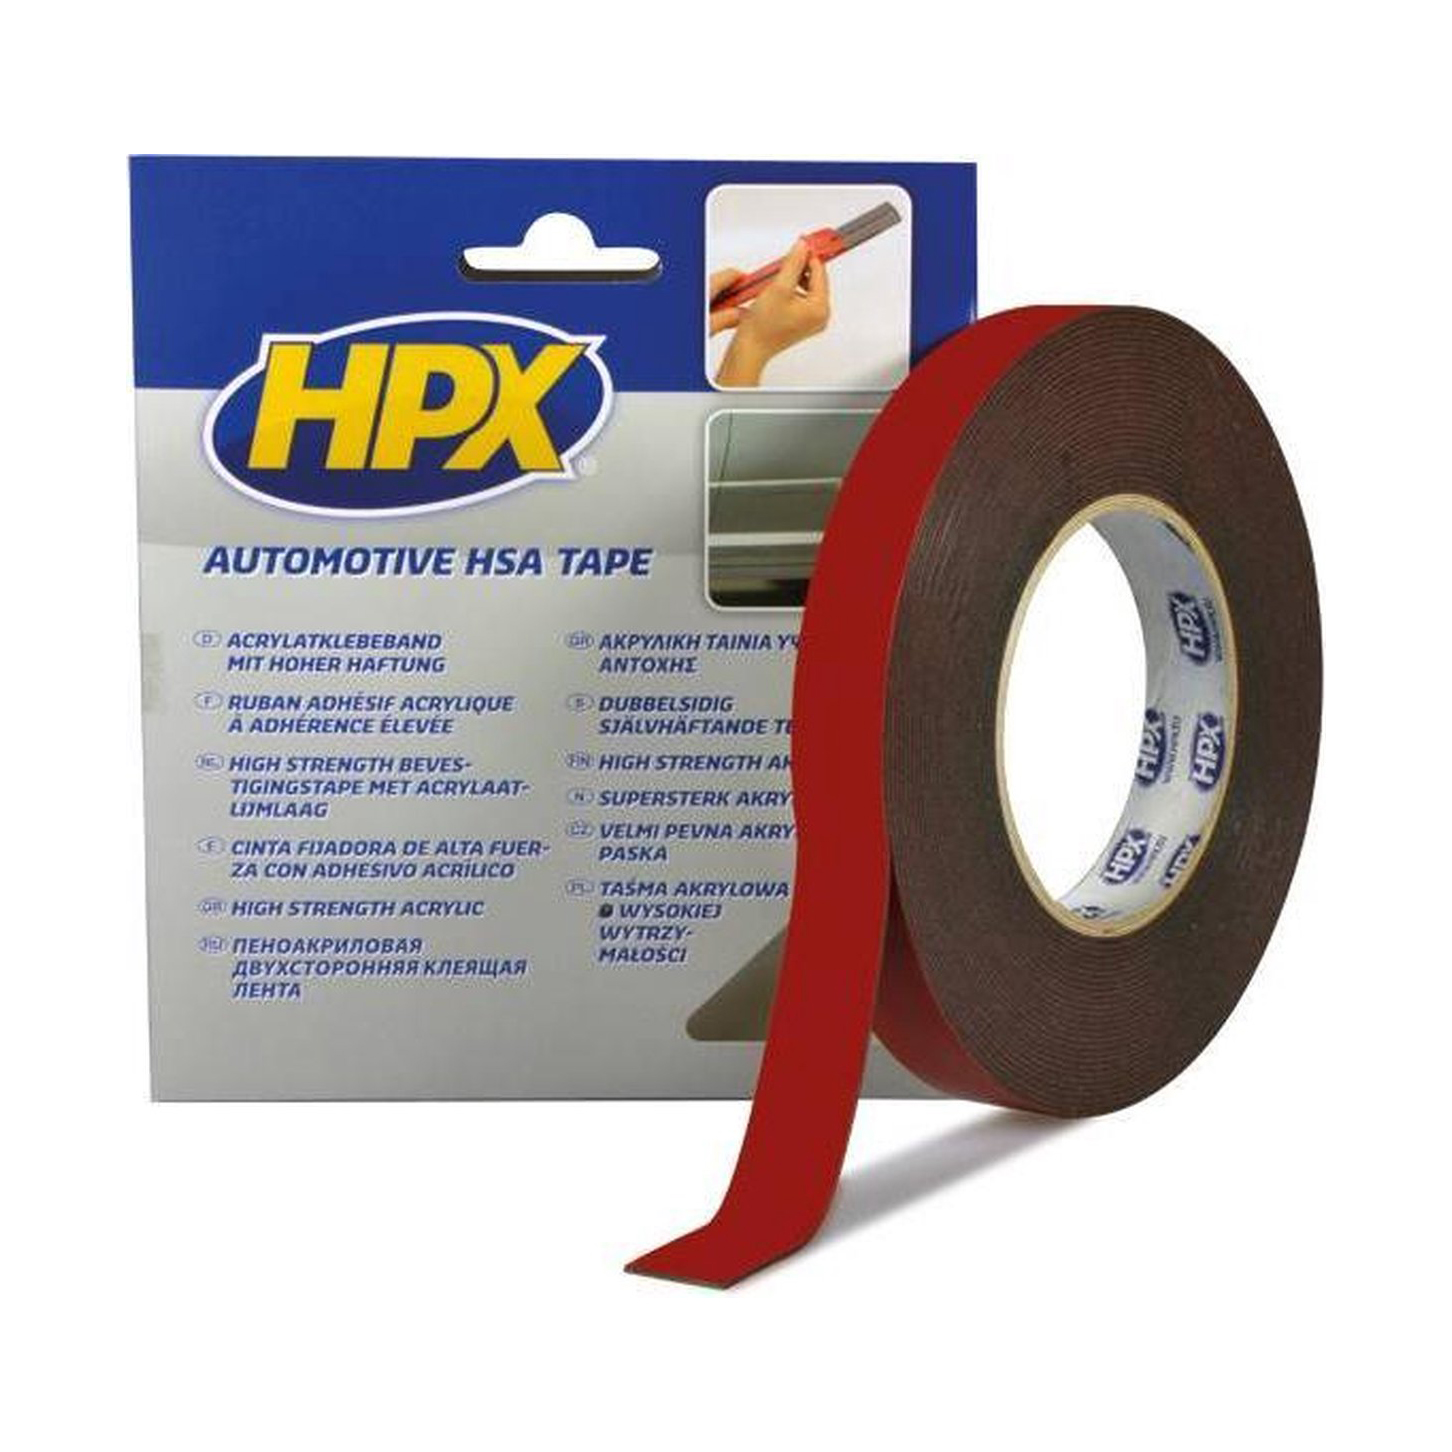 zege Gewoon doen pik HPX Dubbelzijdig Acryl Tape 19mm x 10mtr – voor 15:00? morgen verzonden –  AutolakGigant